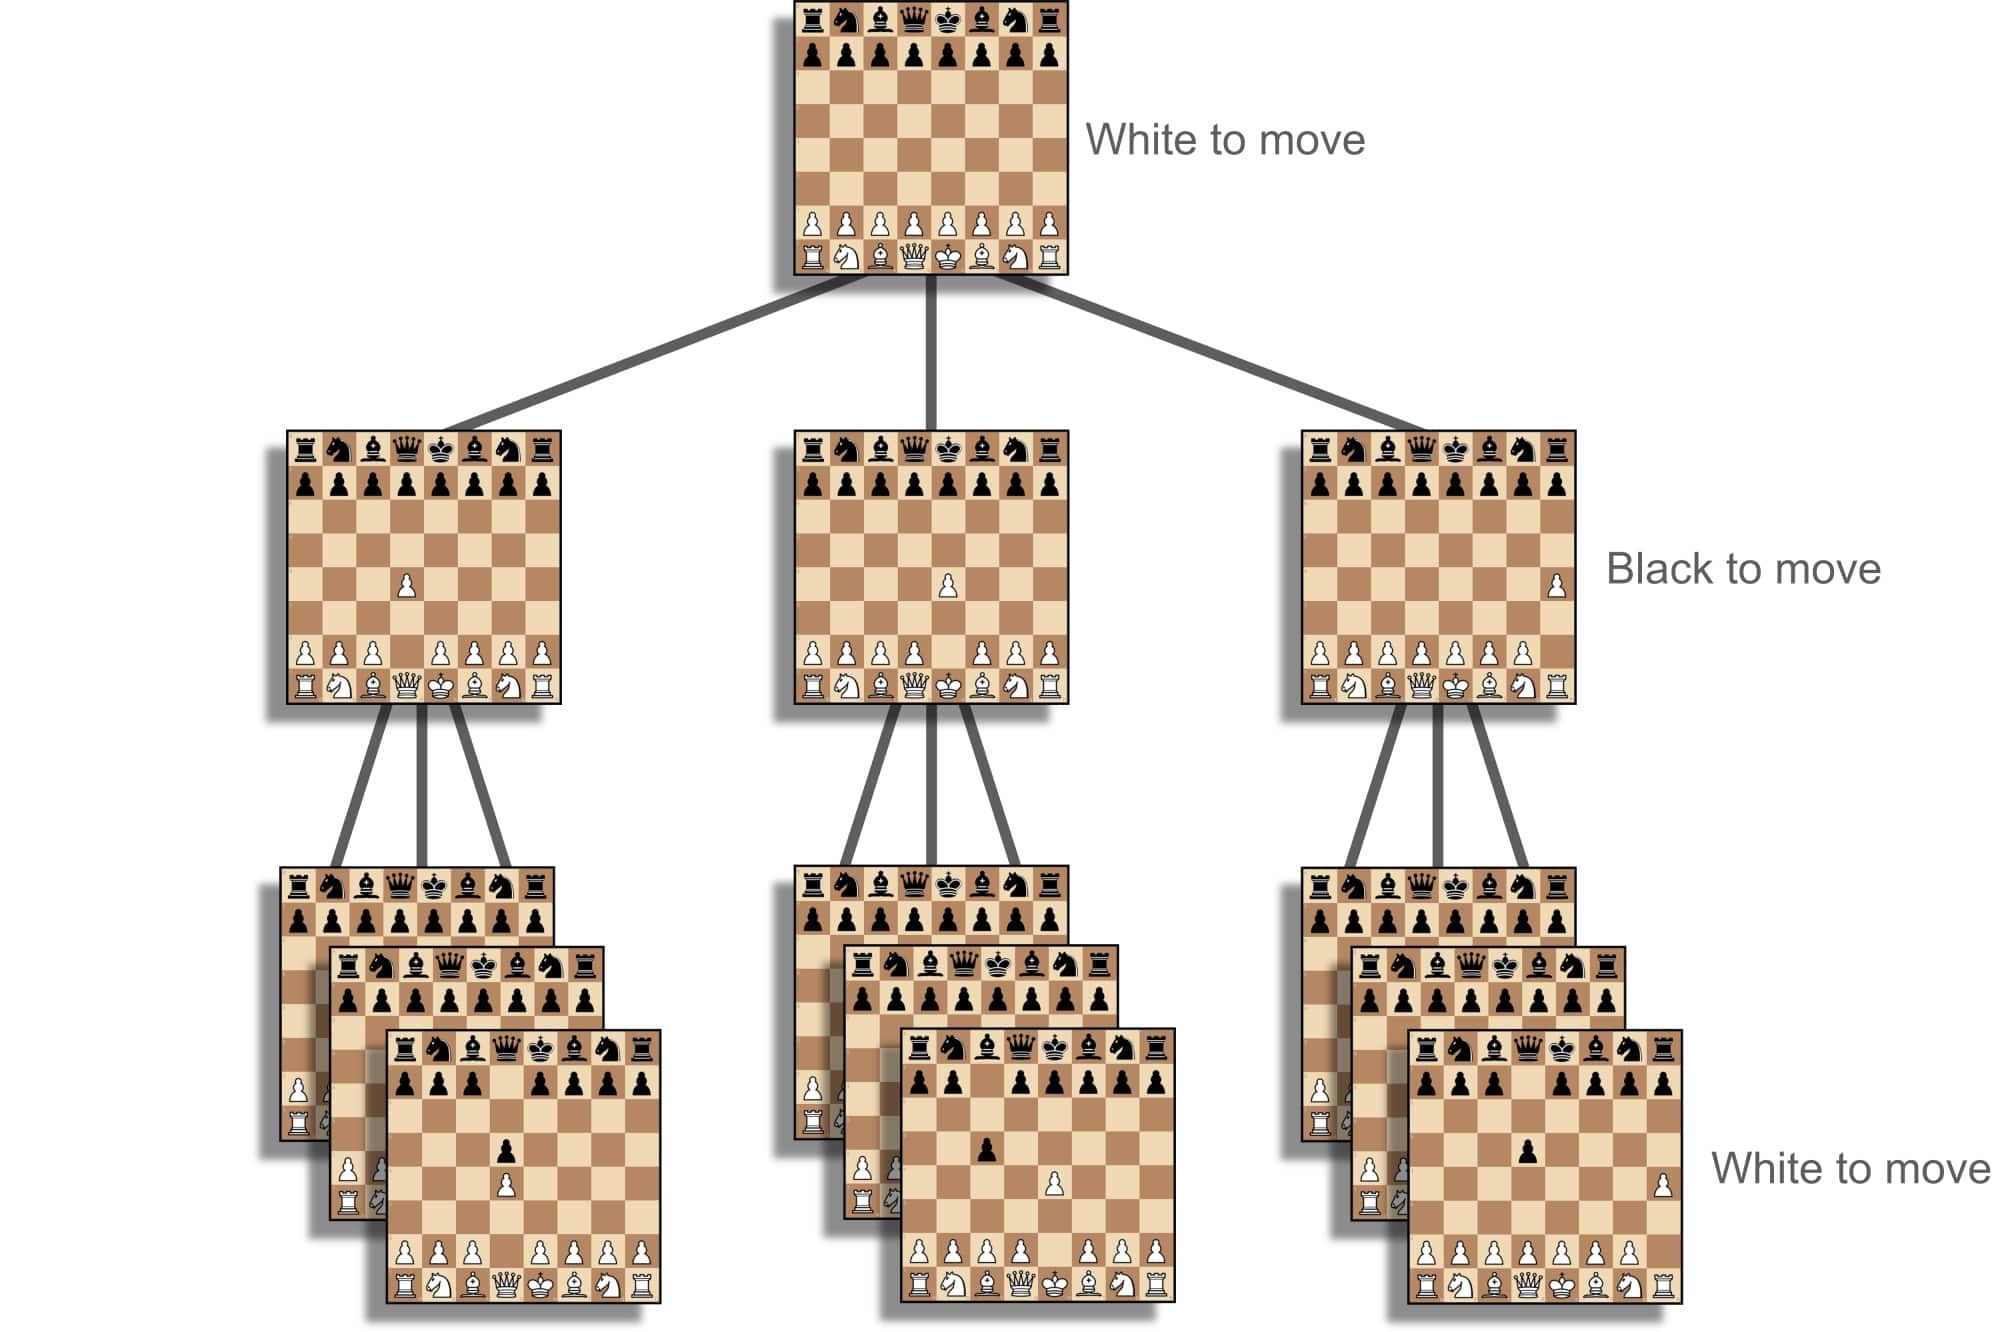   Uma imagem representando uma árvore de decisão para um jogo de xadrez, mostrando um estado inicial do tabuleiro com 